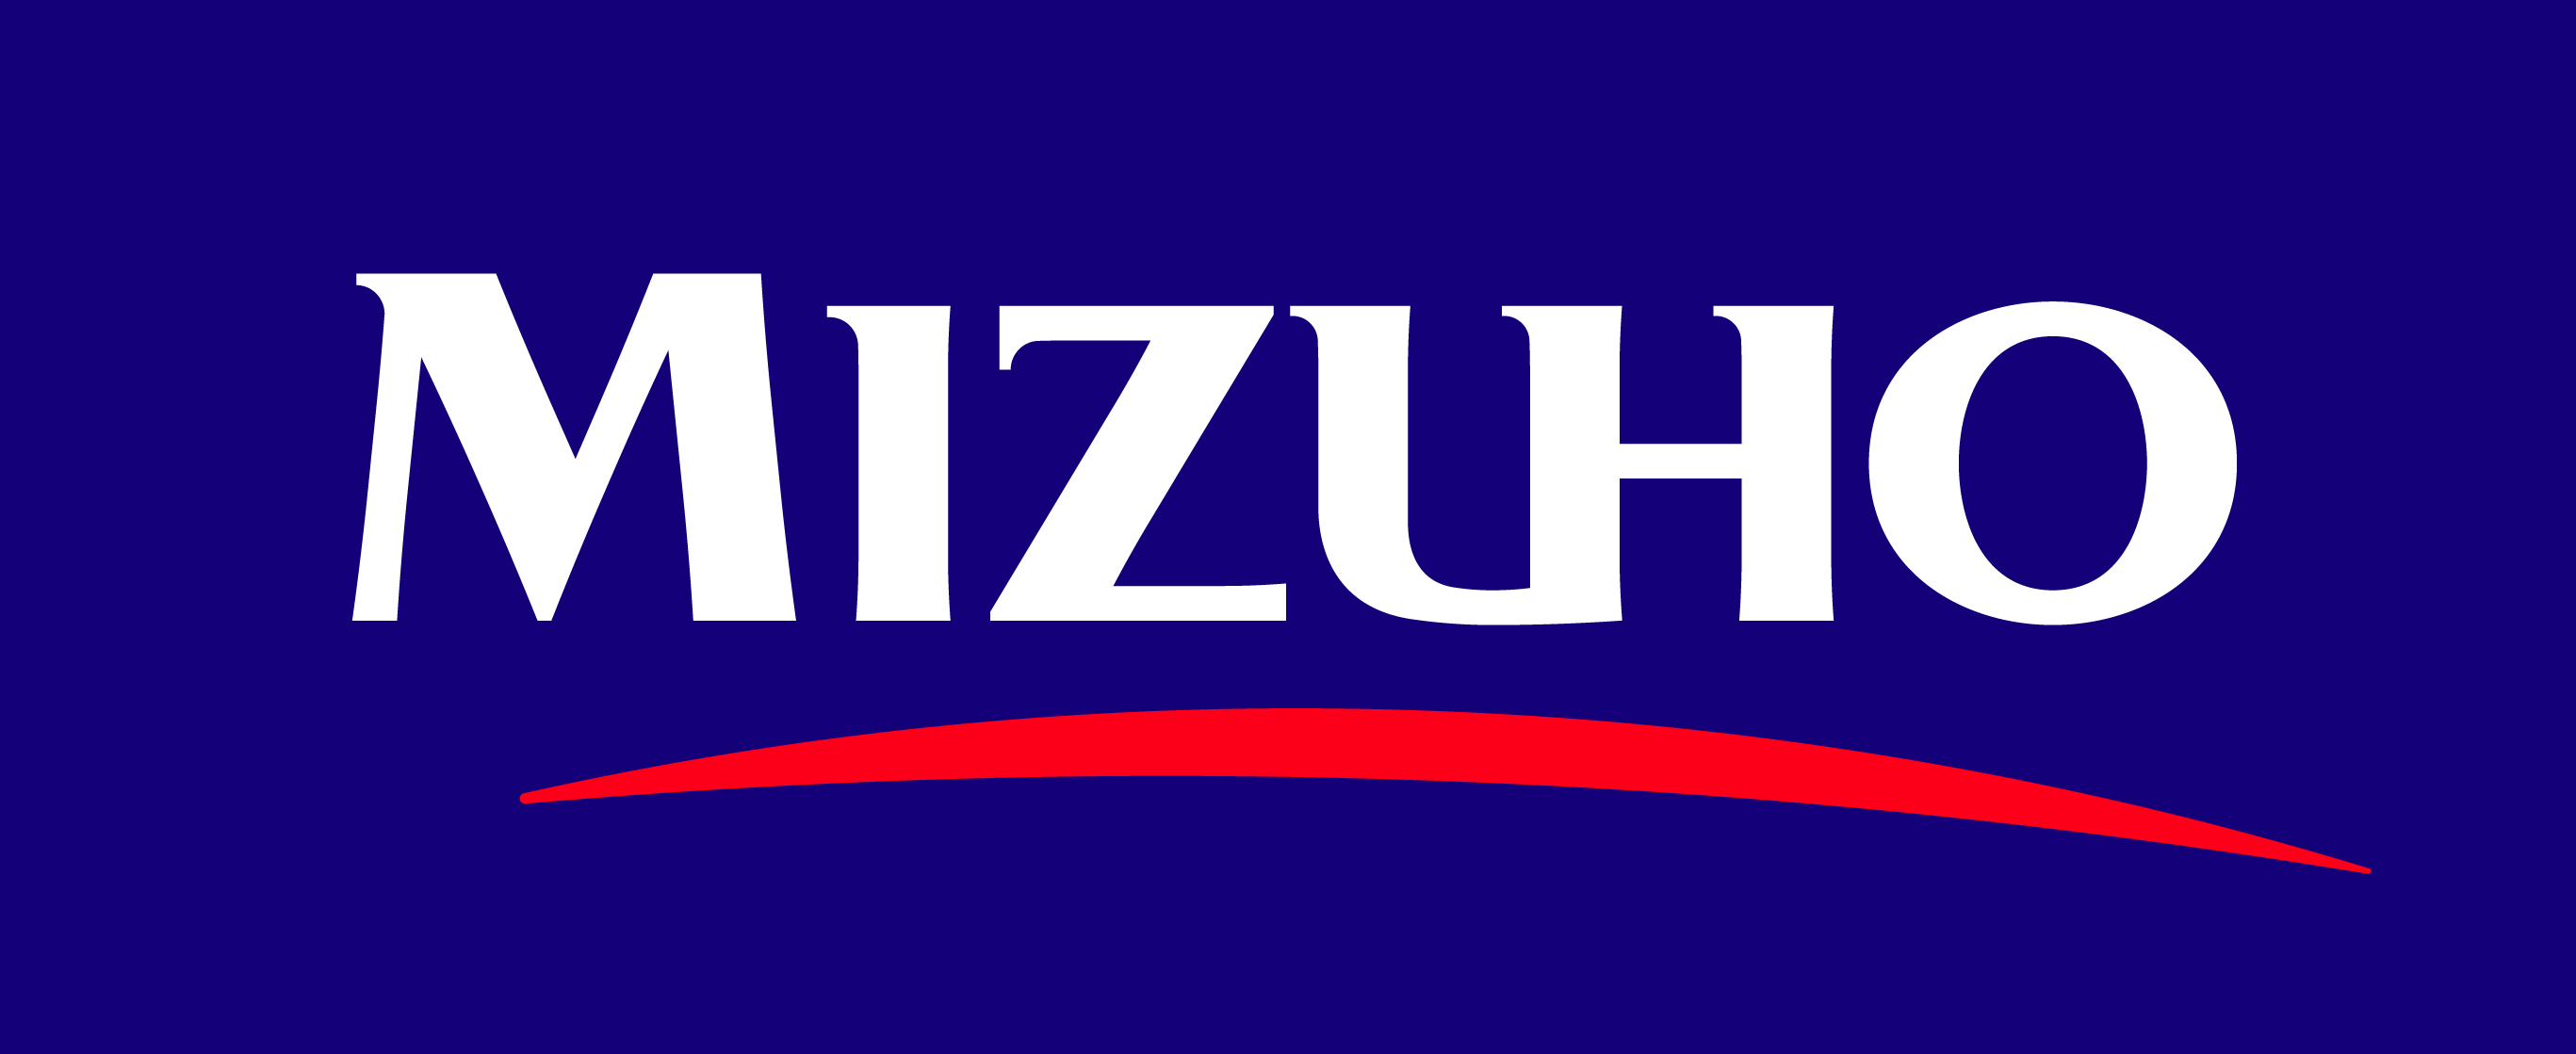 Mizuho Financial Group, Inc. logo